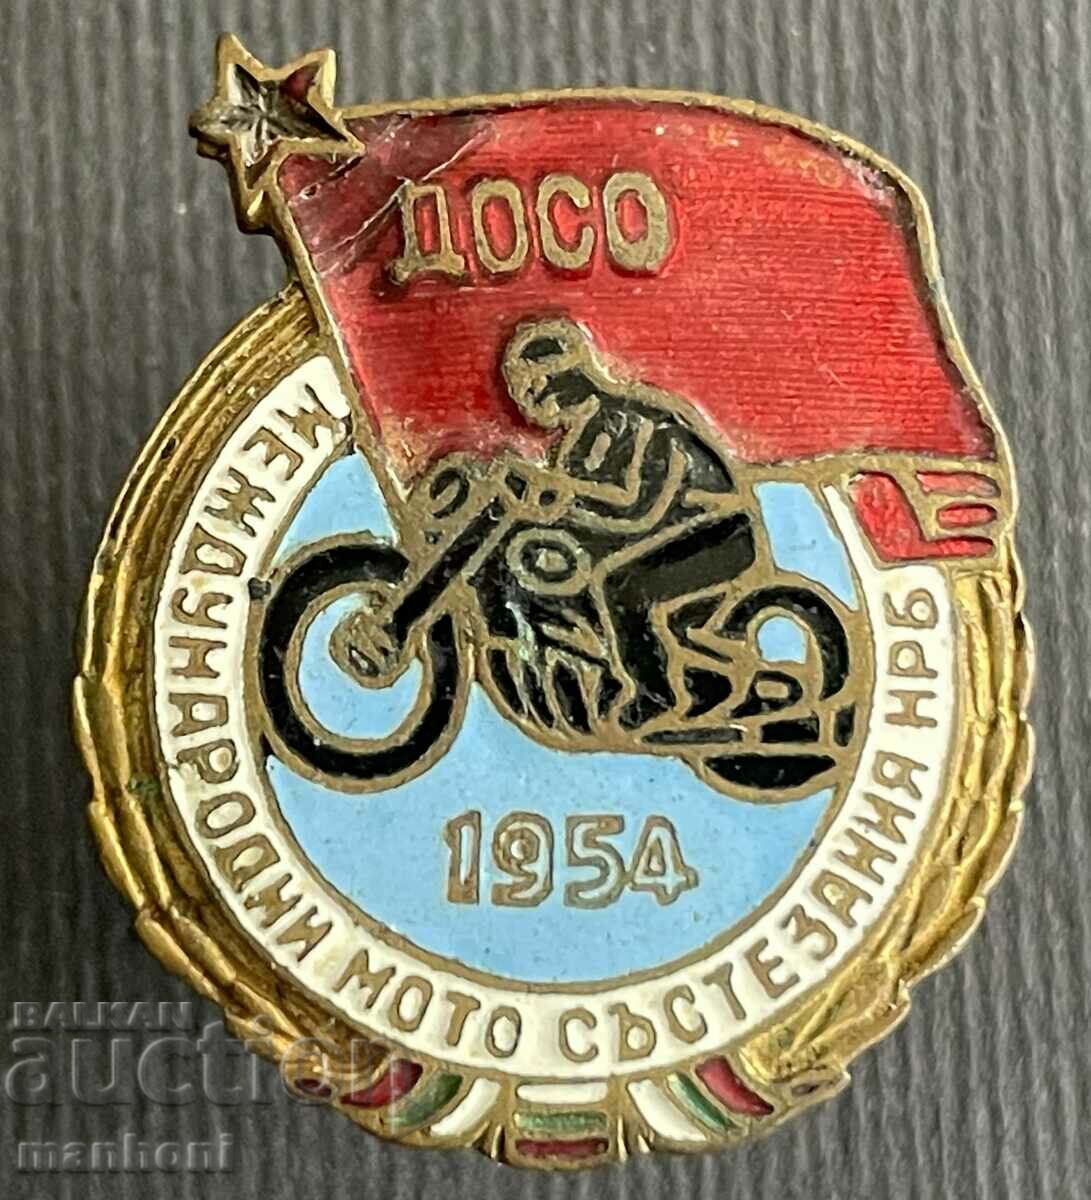 5606 България Международни мото състезания 1954 НРБ ДОСО ема